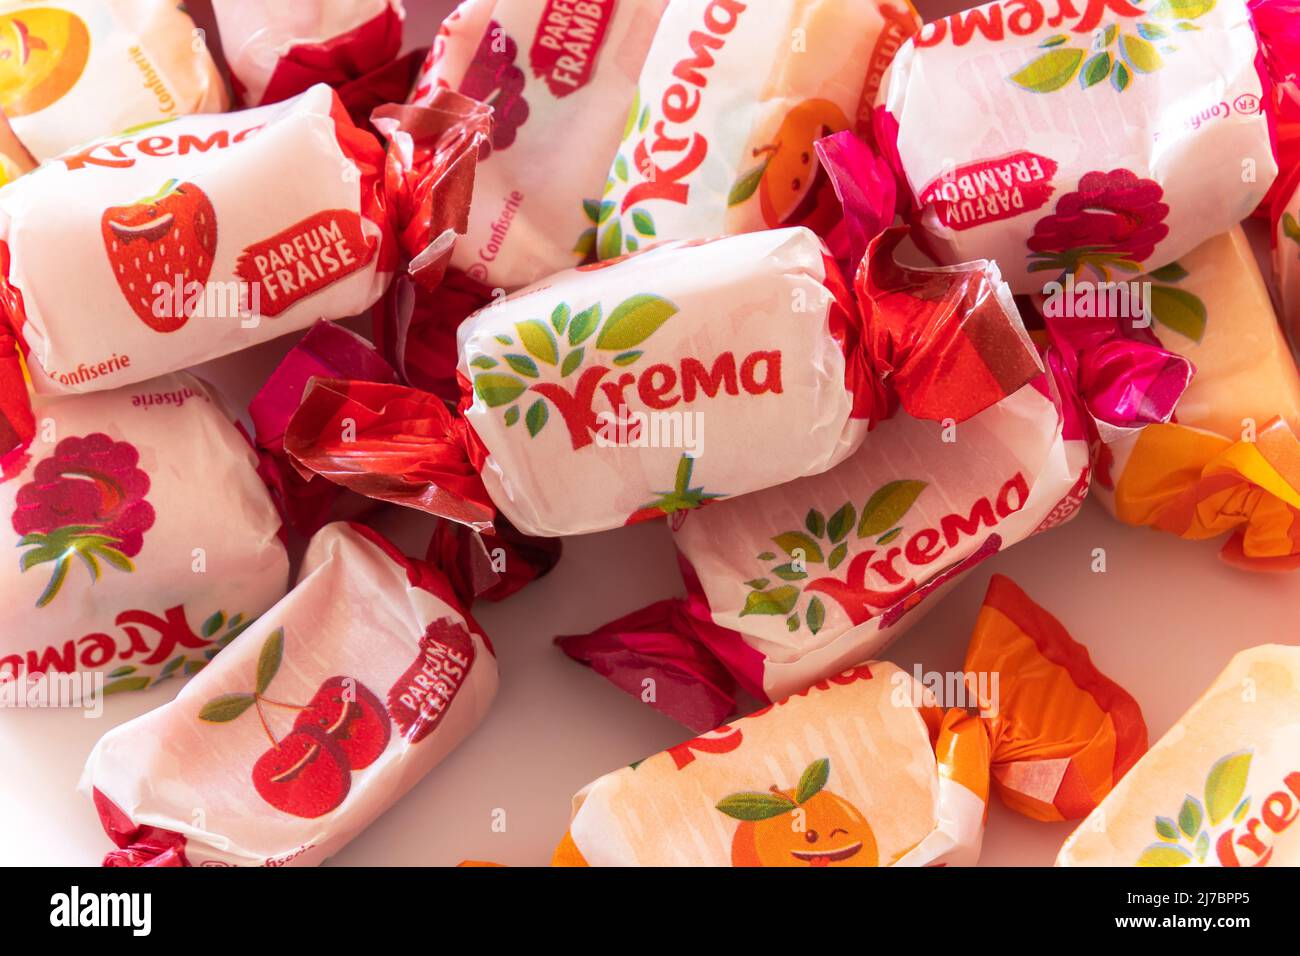 gros plan sur les bonbons de la marque kréma regal'ad Photo Stock - Alamy